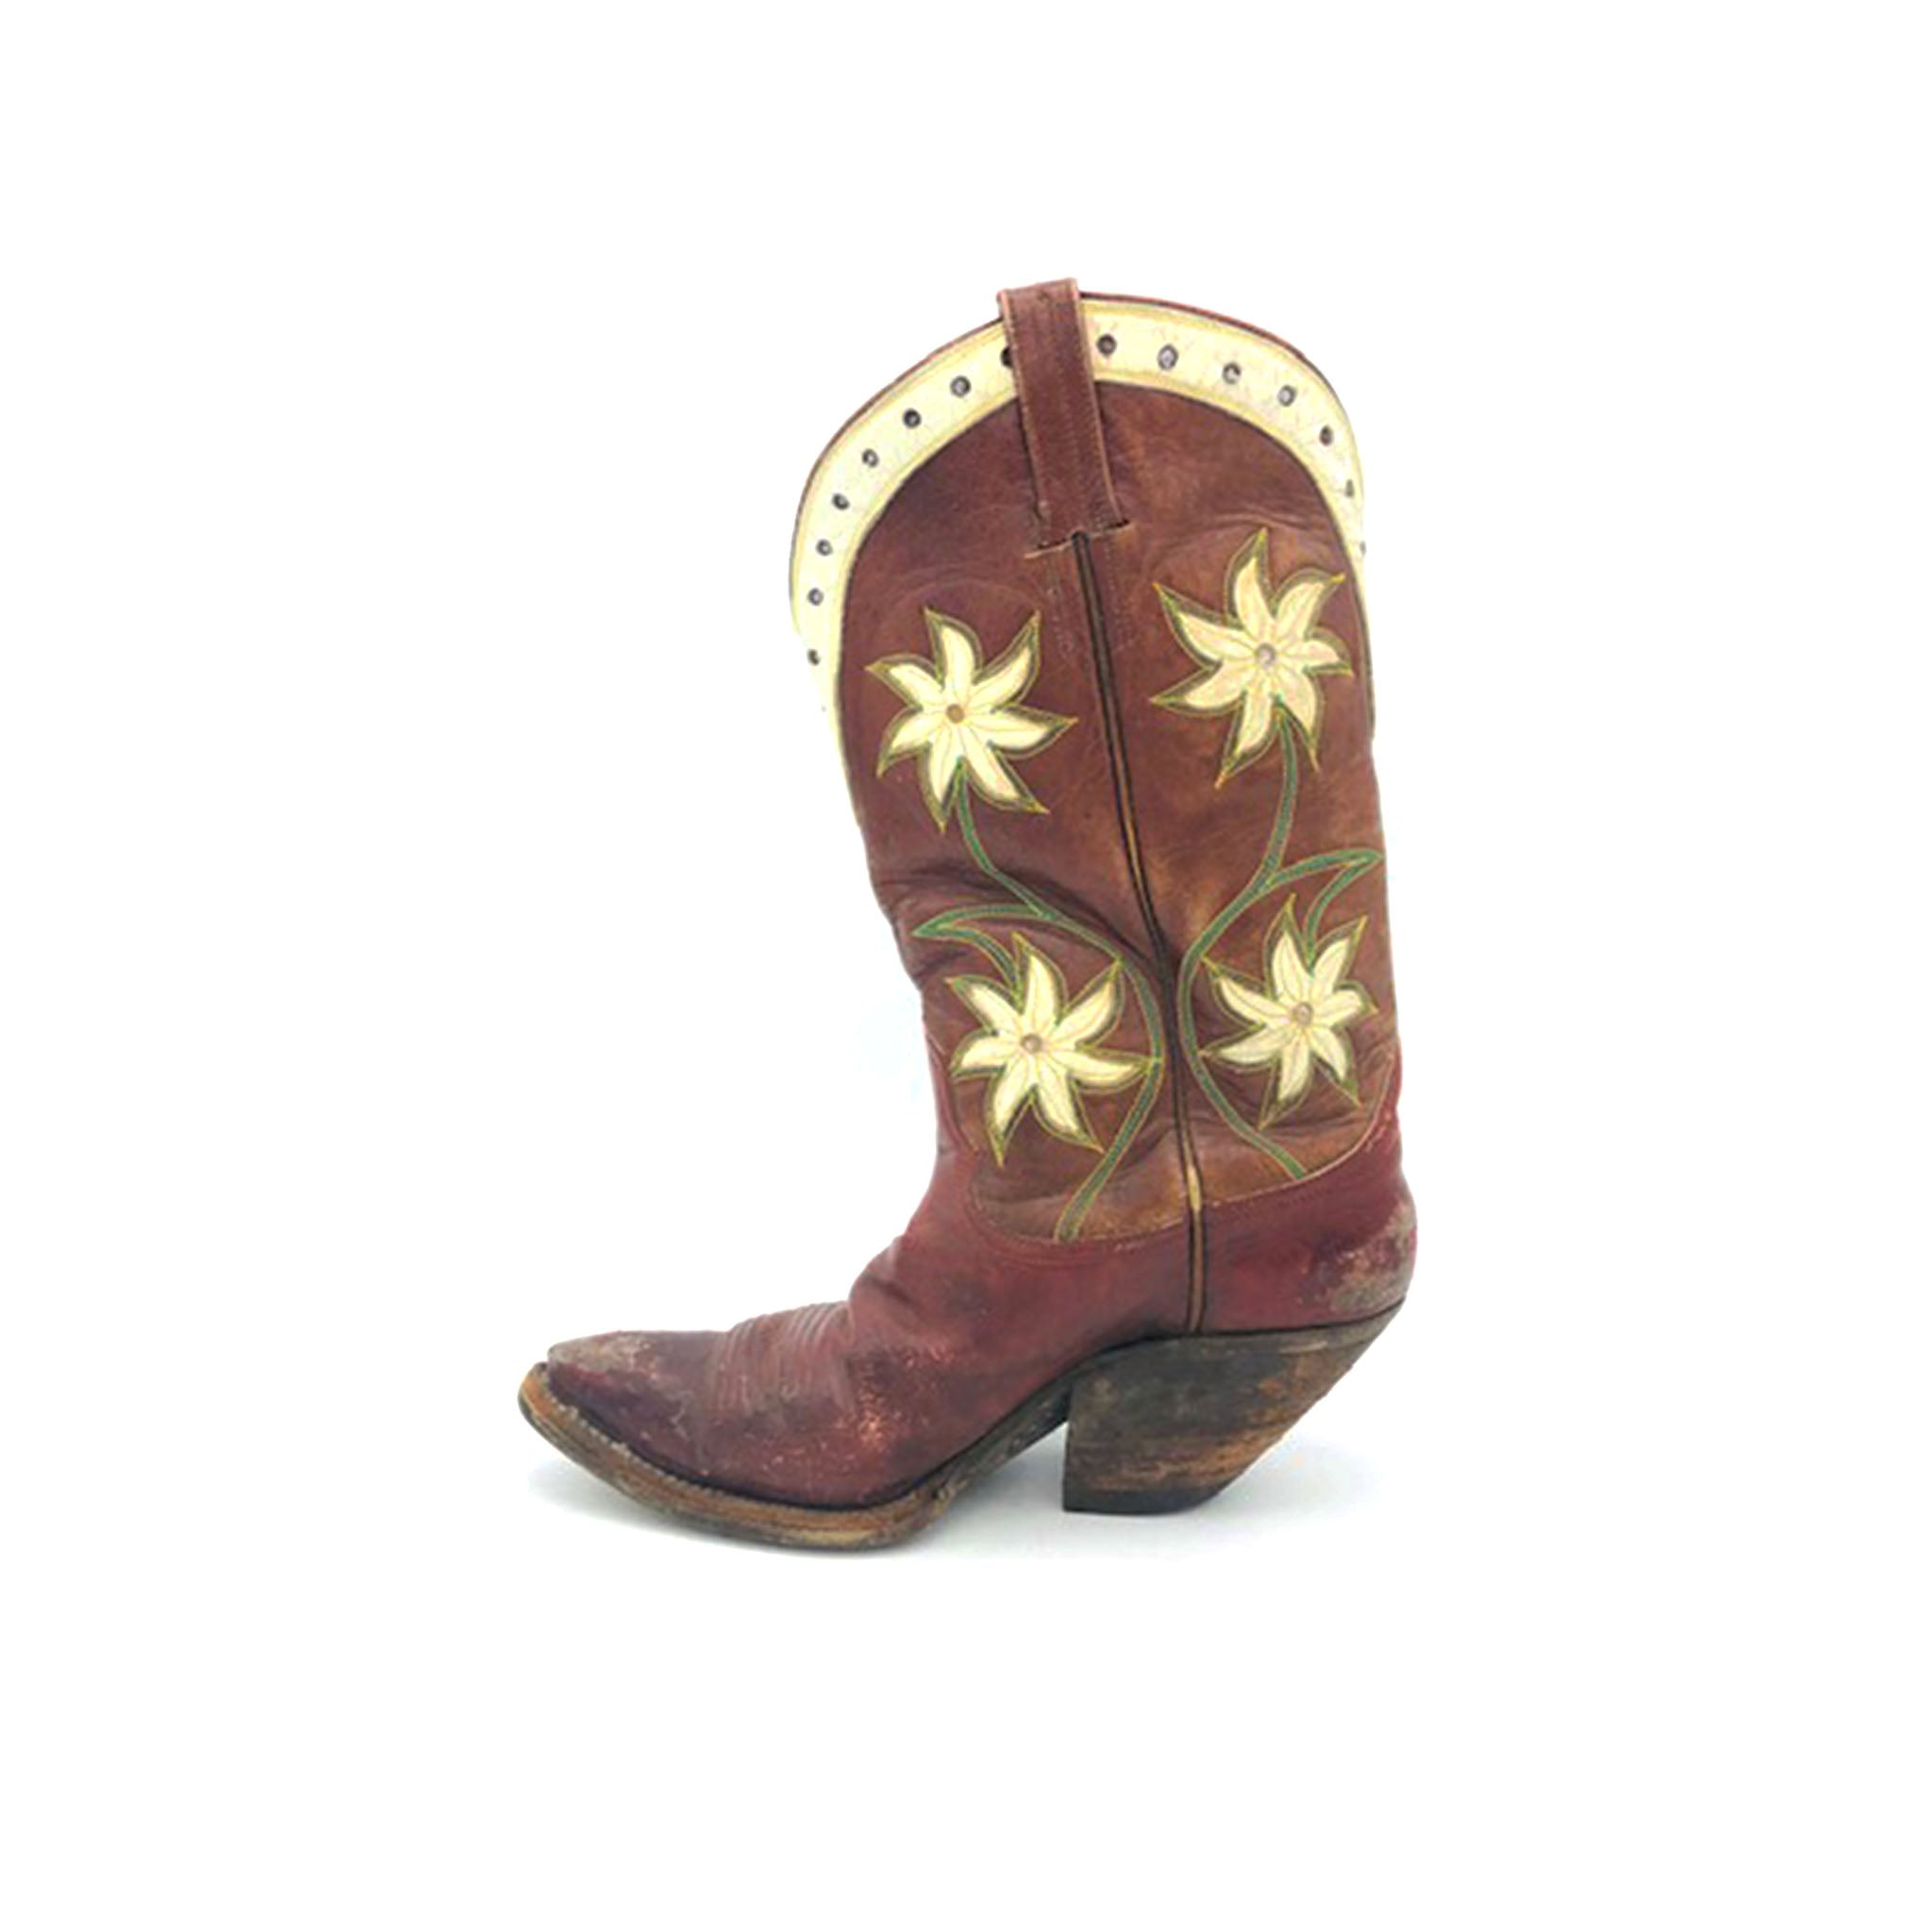 Handmade Women's Cowboy Boots, Burgundy